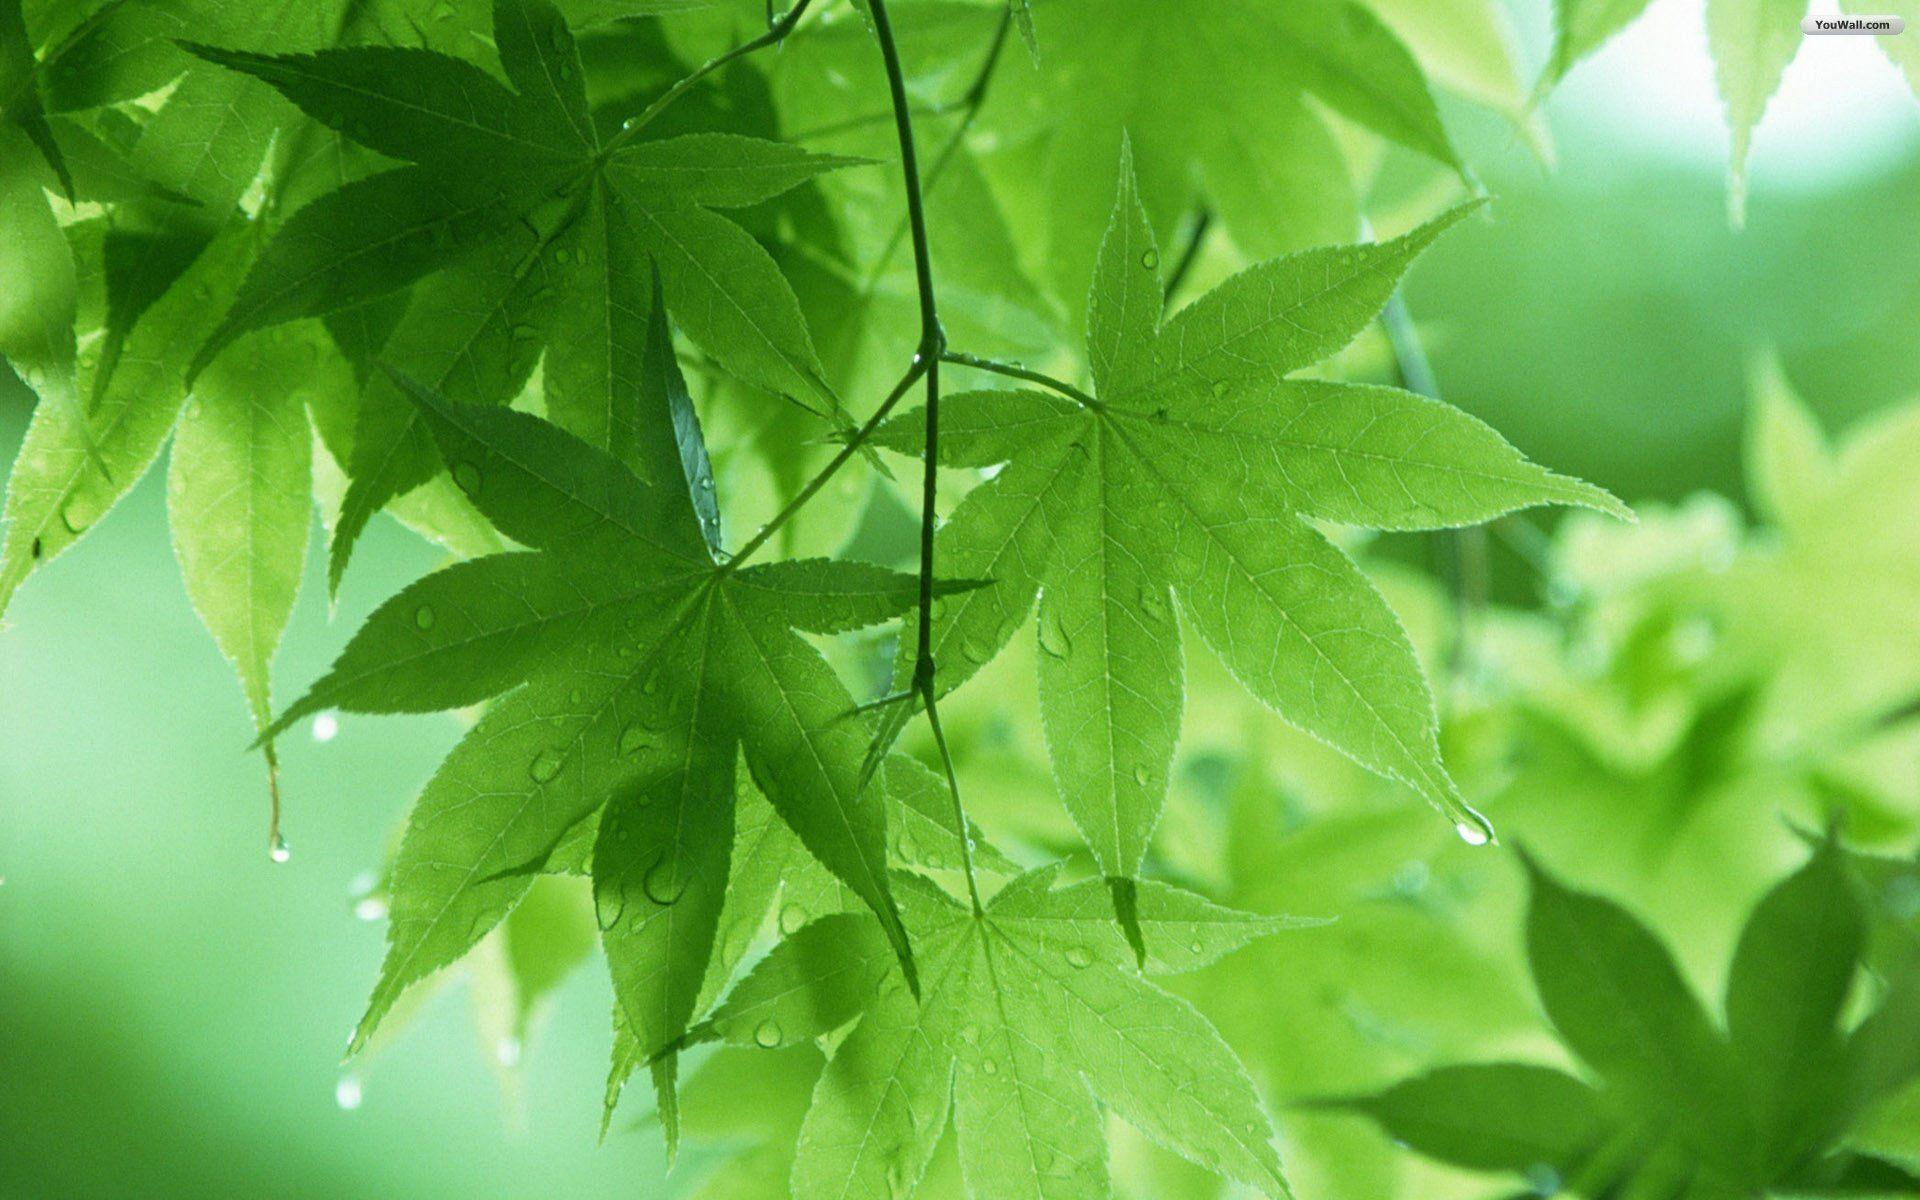 New Green Tree Foliage HD Wallpaper Free Download. HD Free